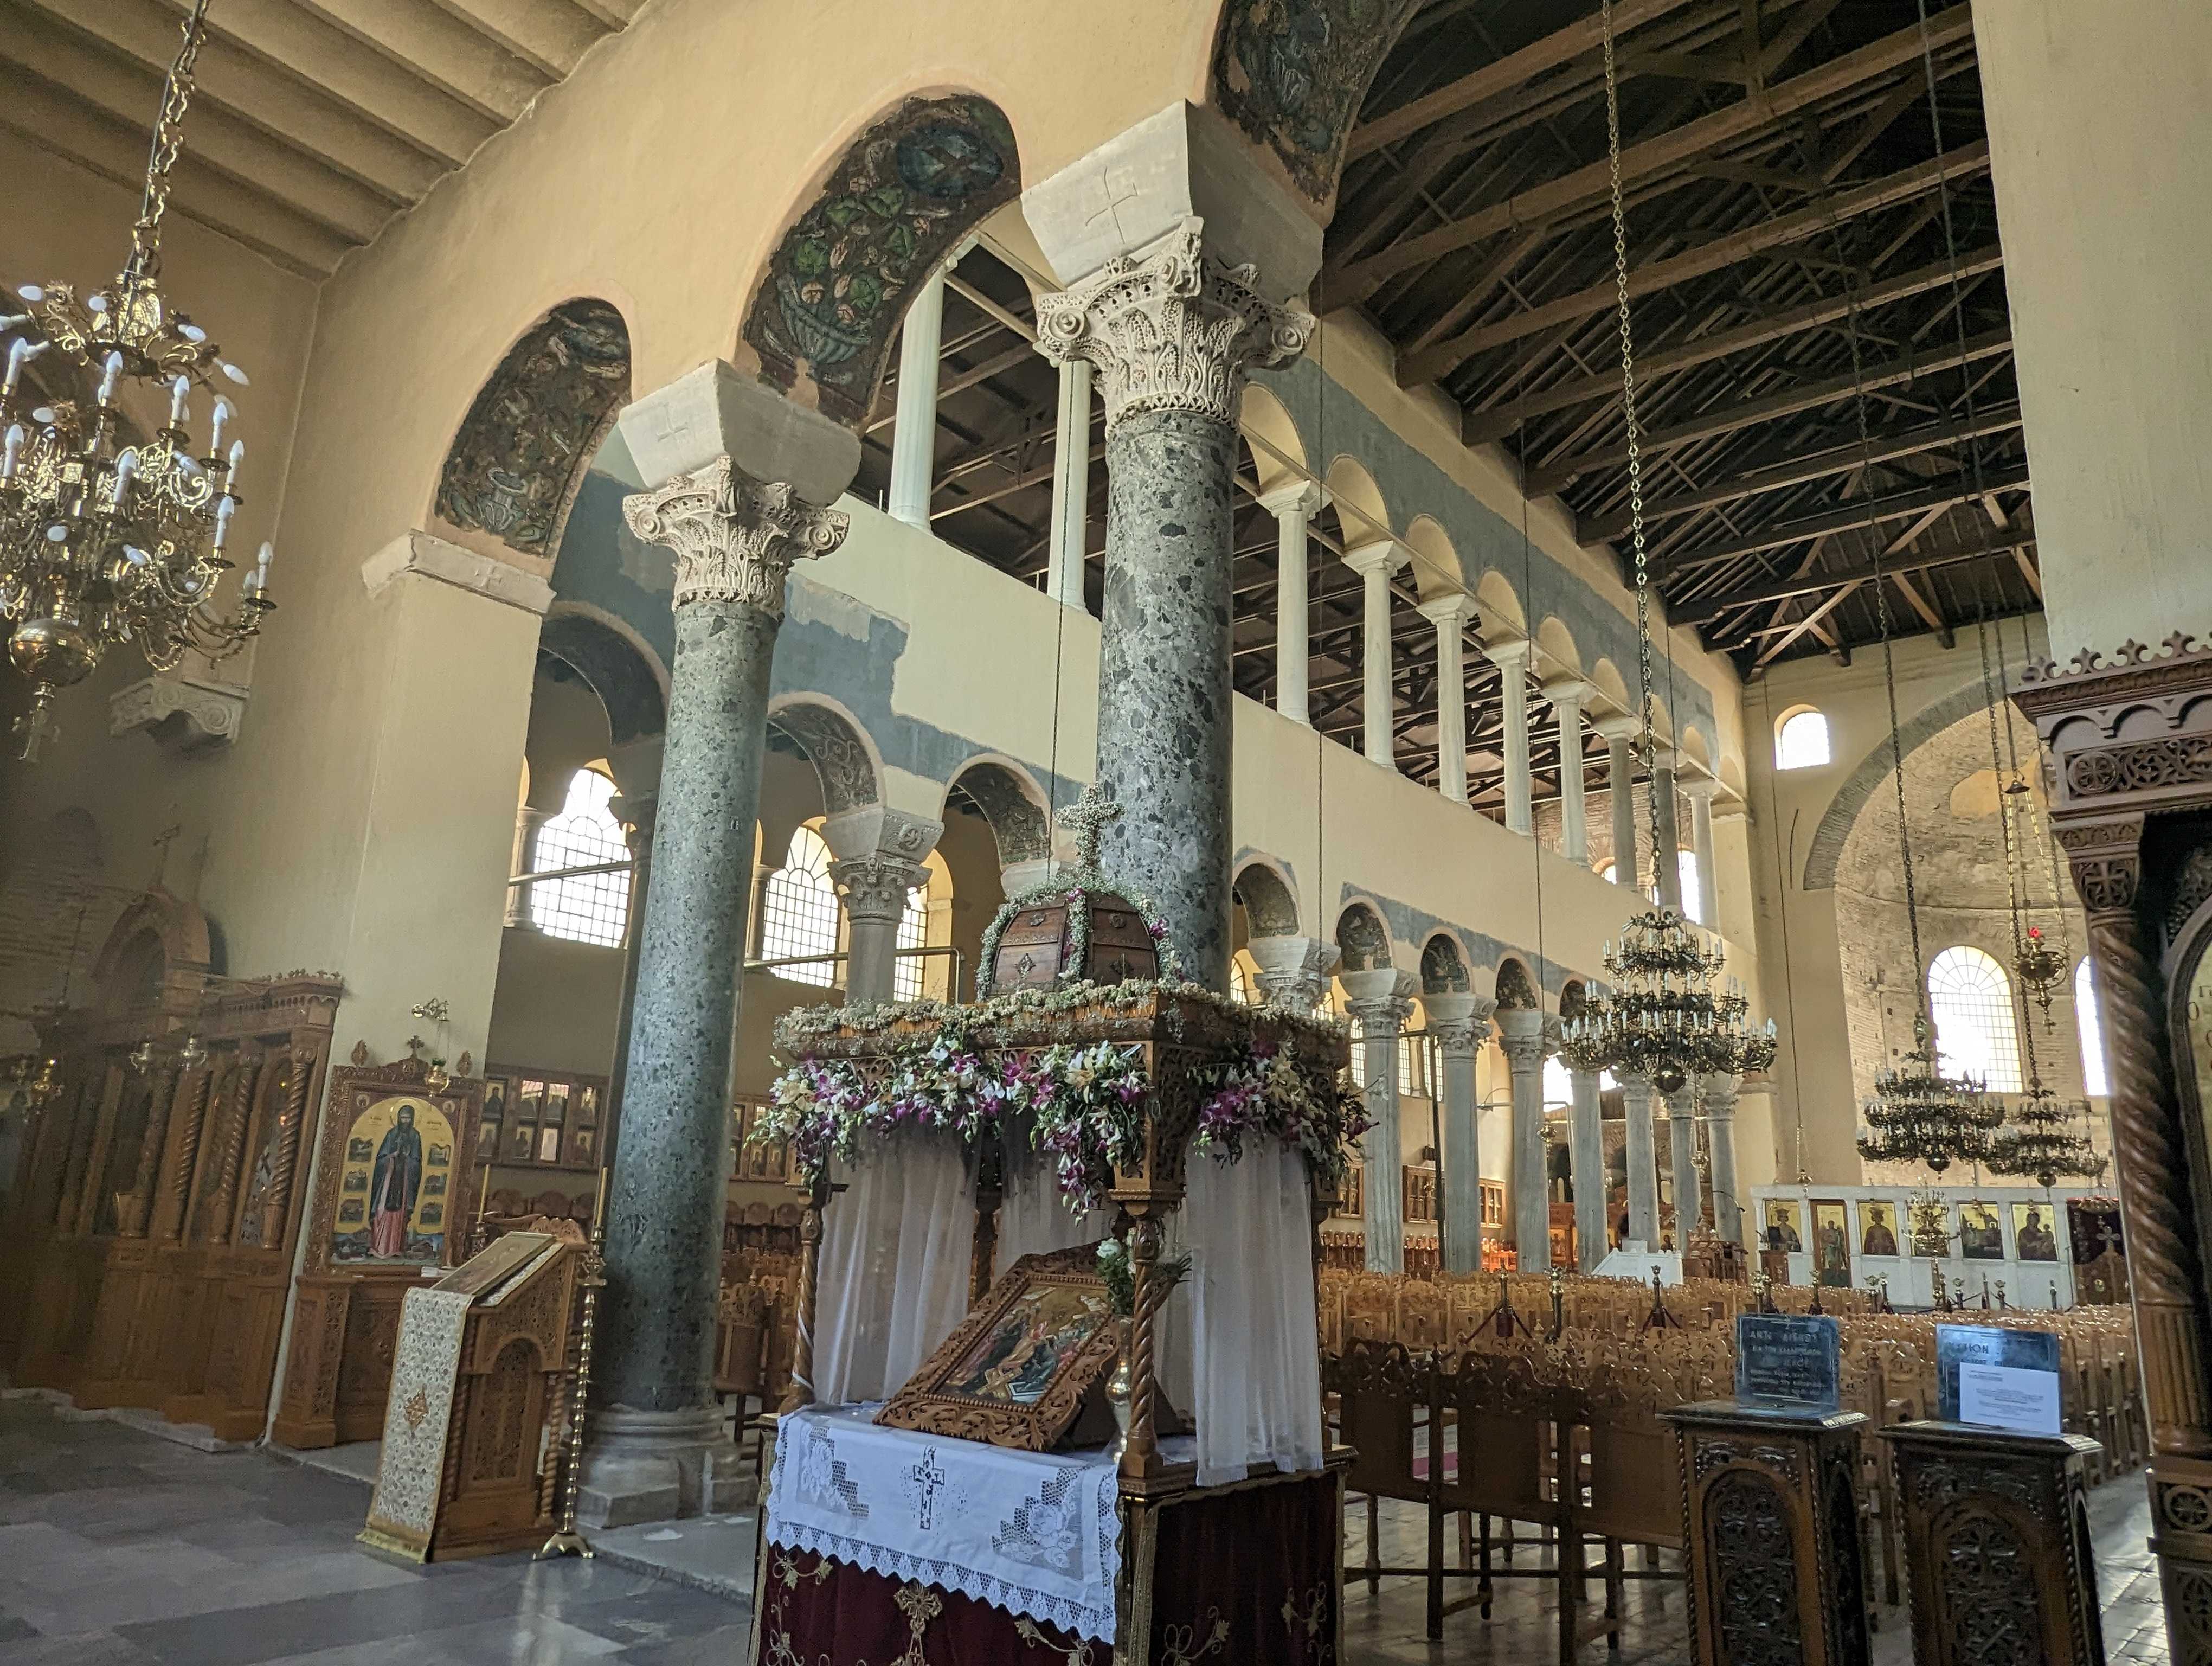 The church of Panagia Acheiropoietos